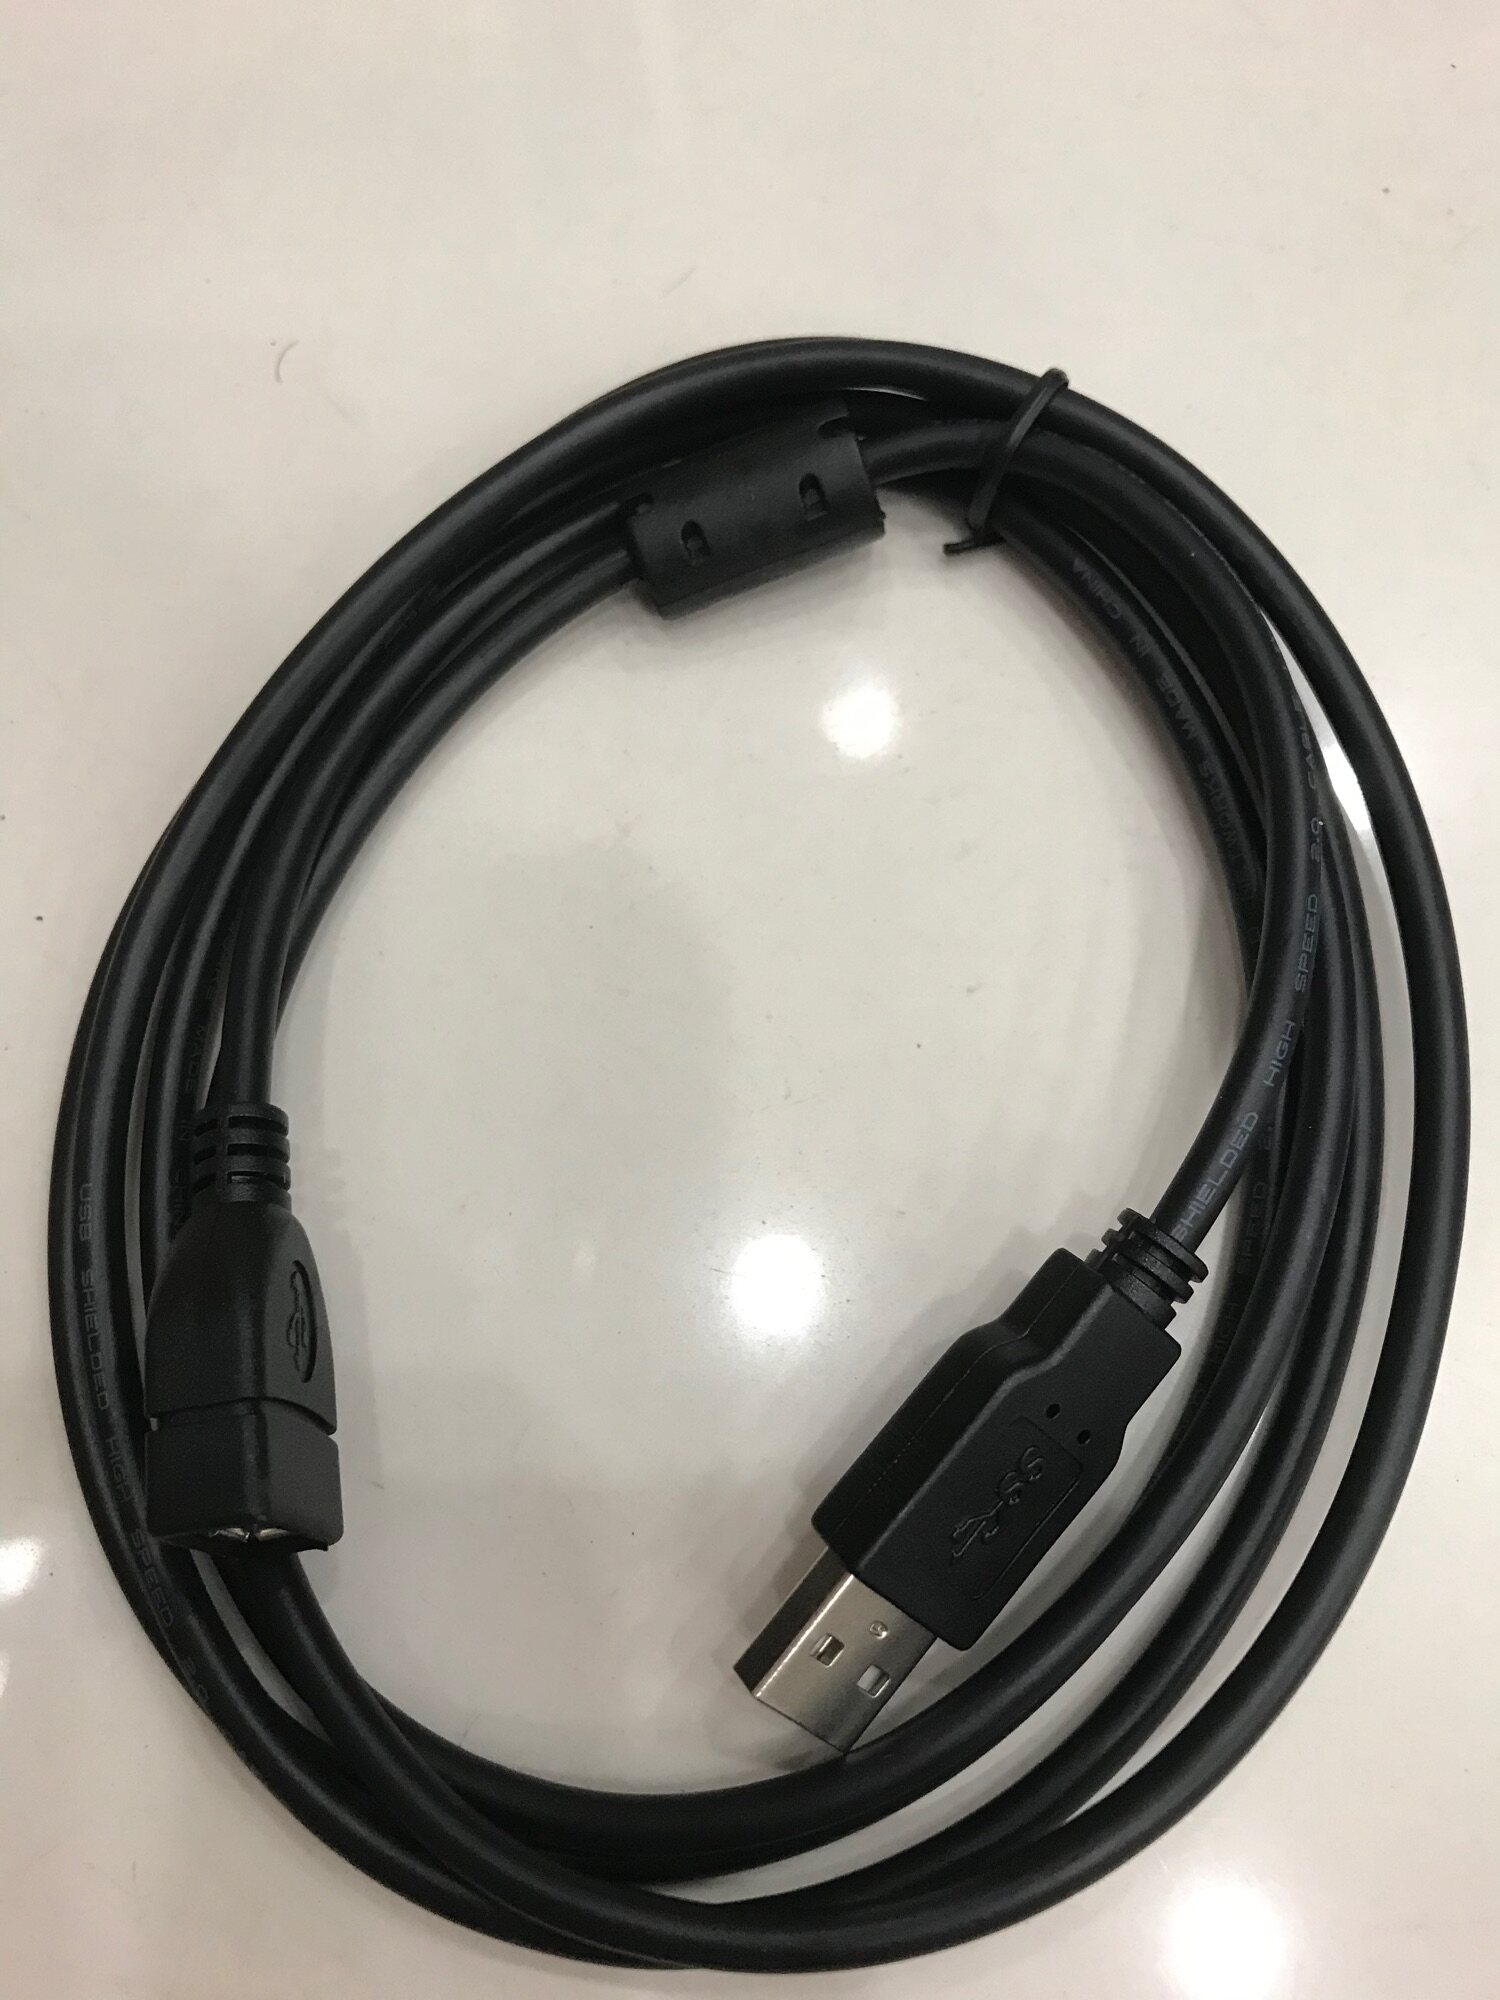 สาย USB 2.0 ต่อยาว AM/AF (ผู้-เมีย) ความยาว 1.8 เมตร(สีดำ)